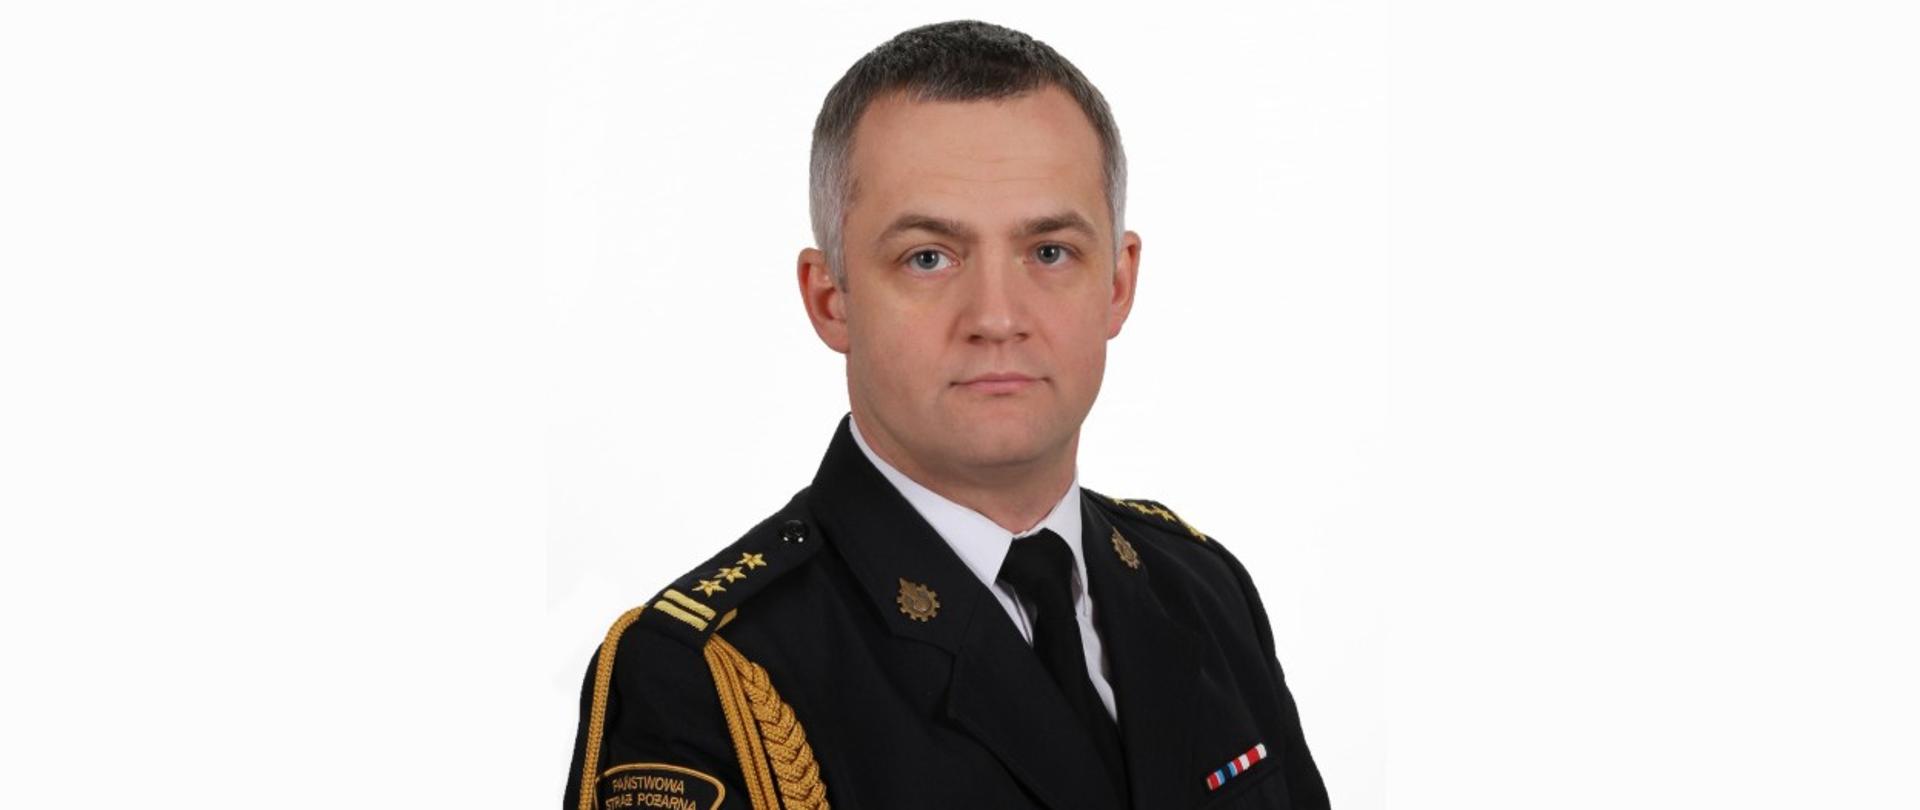 Zdjęcie przedstawia zdjęcie pełniącego obowiązki Zastępcy Komendanta Miejskiego Państwowej Straży Pożarnej bryg. Łukasza Szymańskiego ubranego w mundur galowy. Zdjęcie wykonane na białym tle.